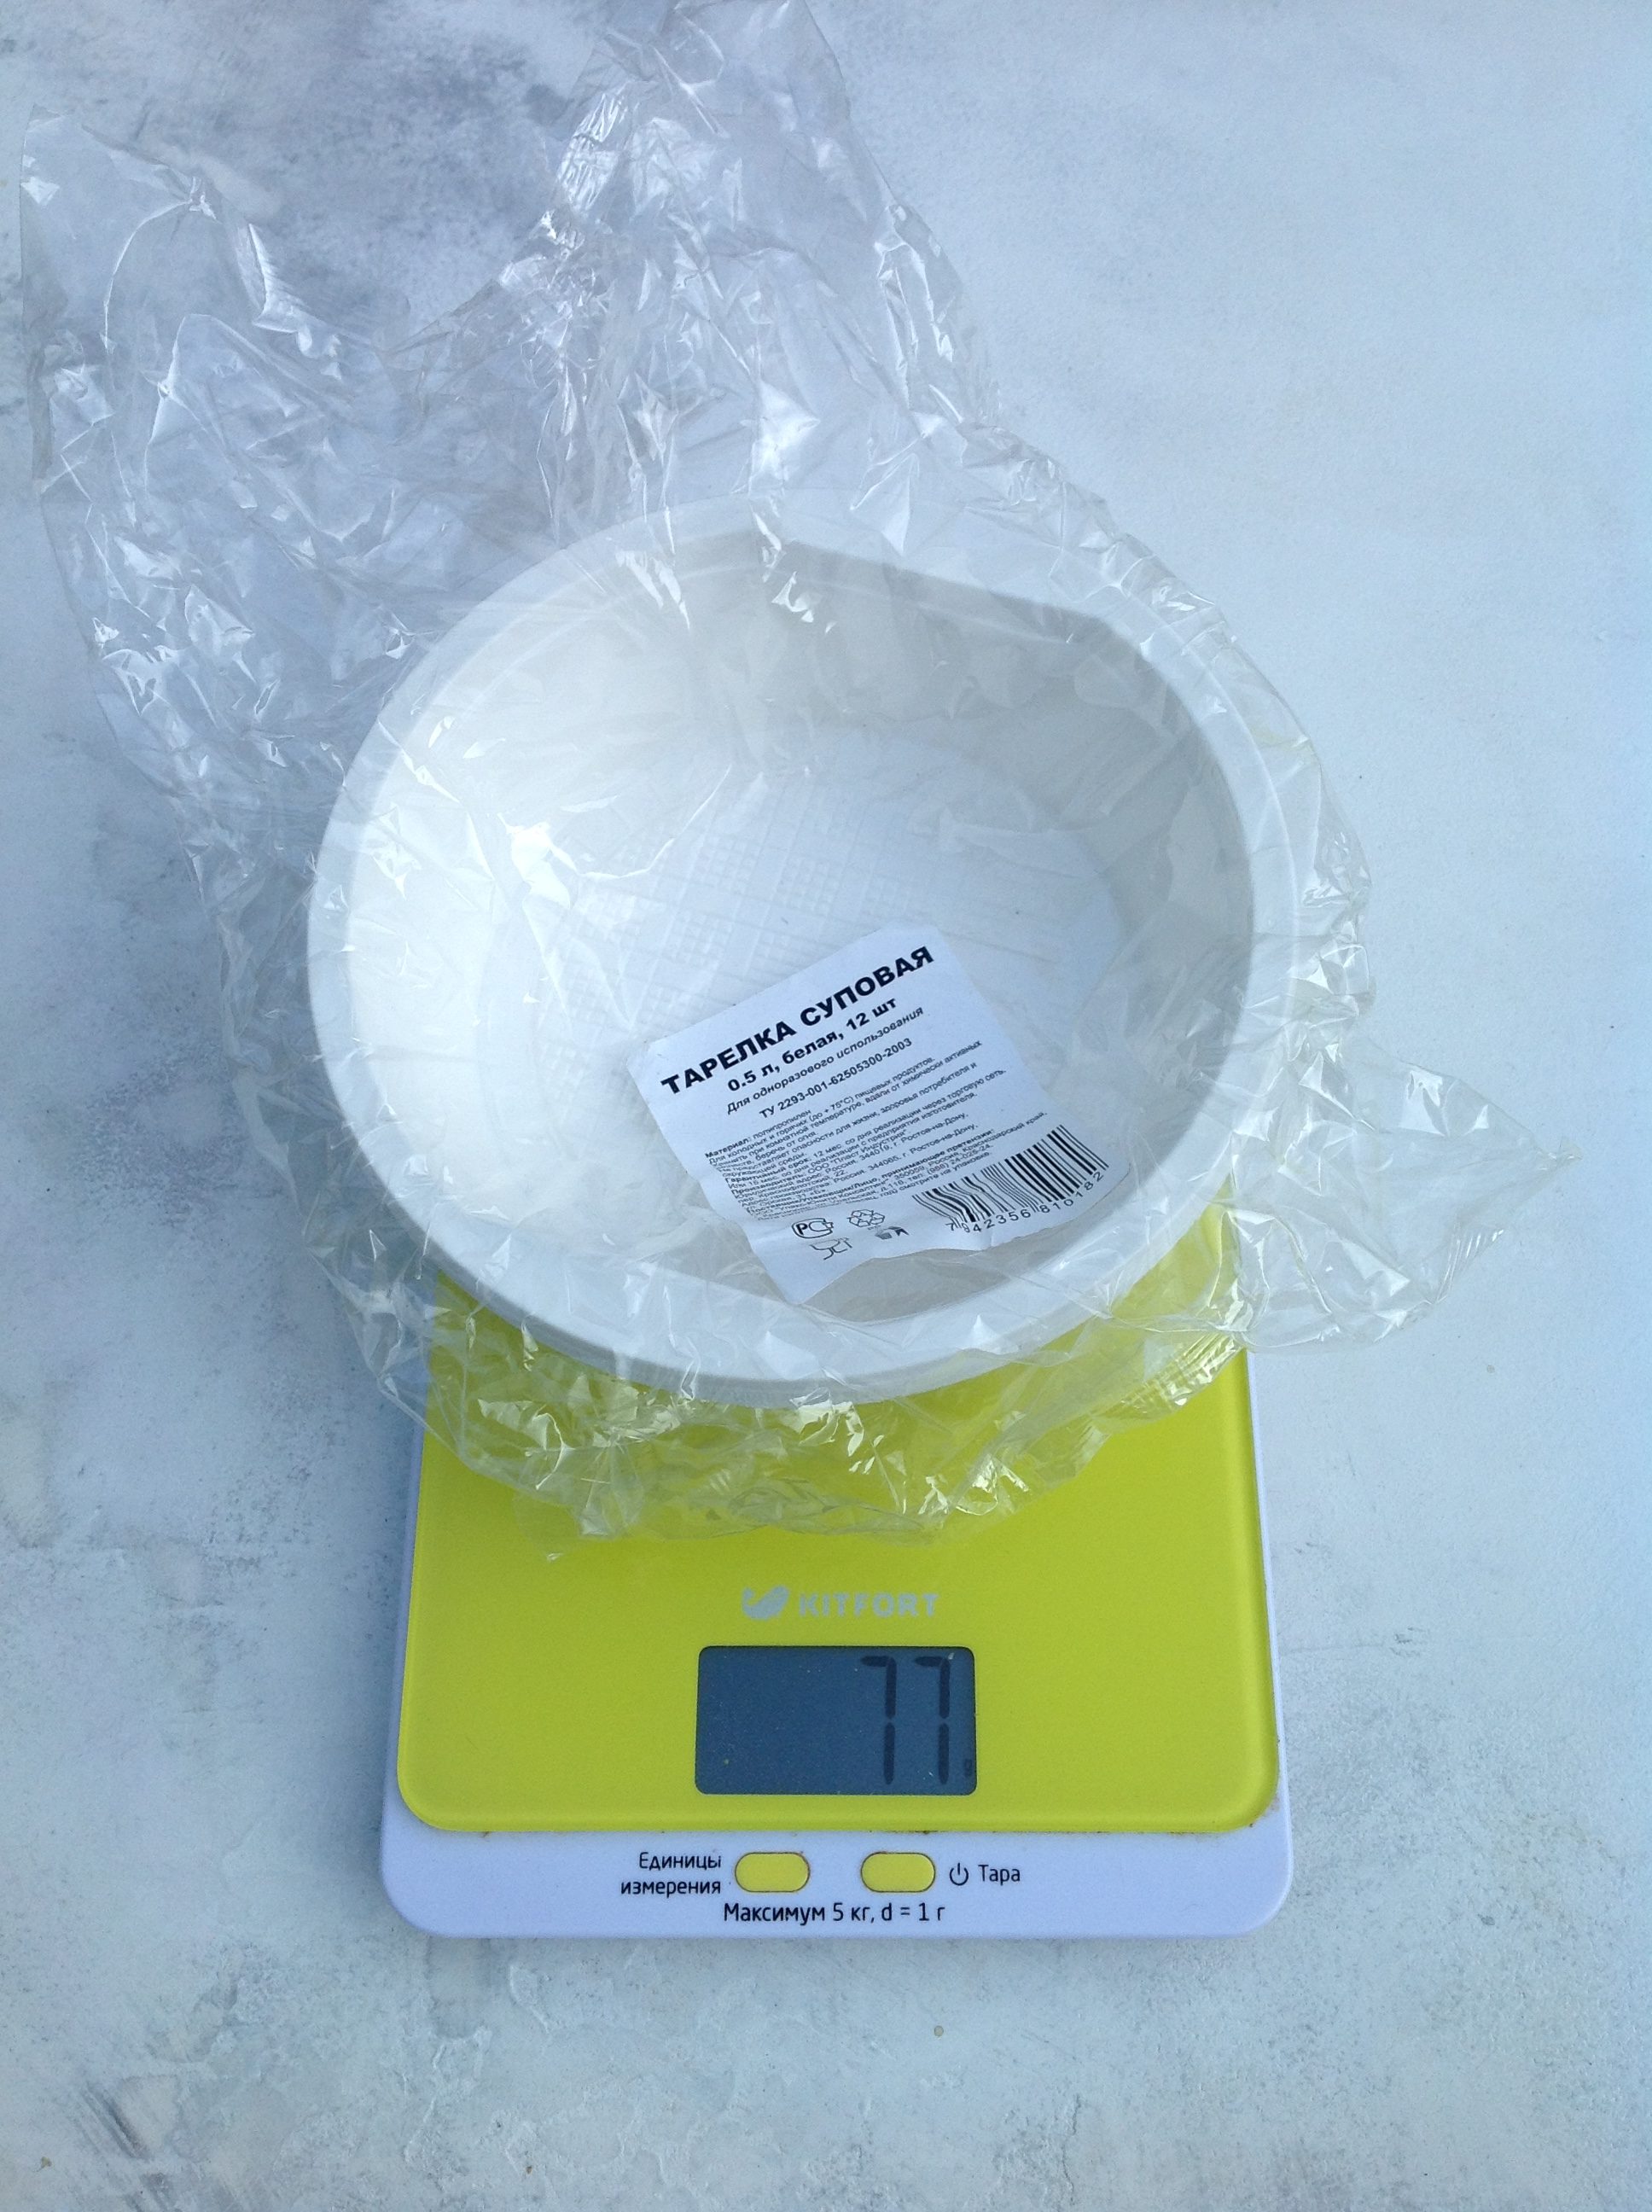 вес набора одноразовых пластиковых тарелок суповых